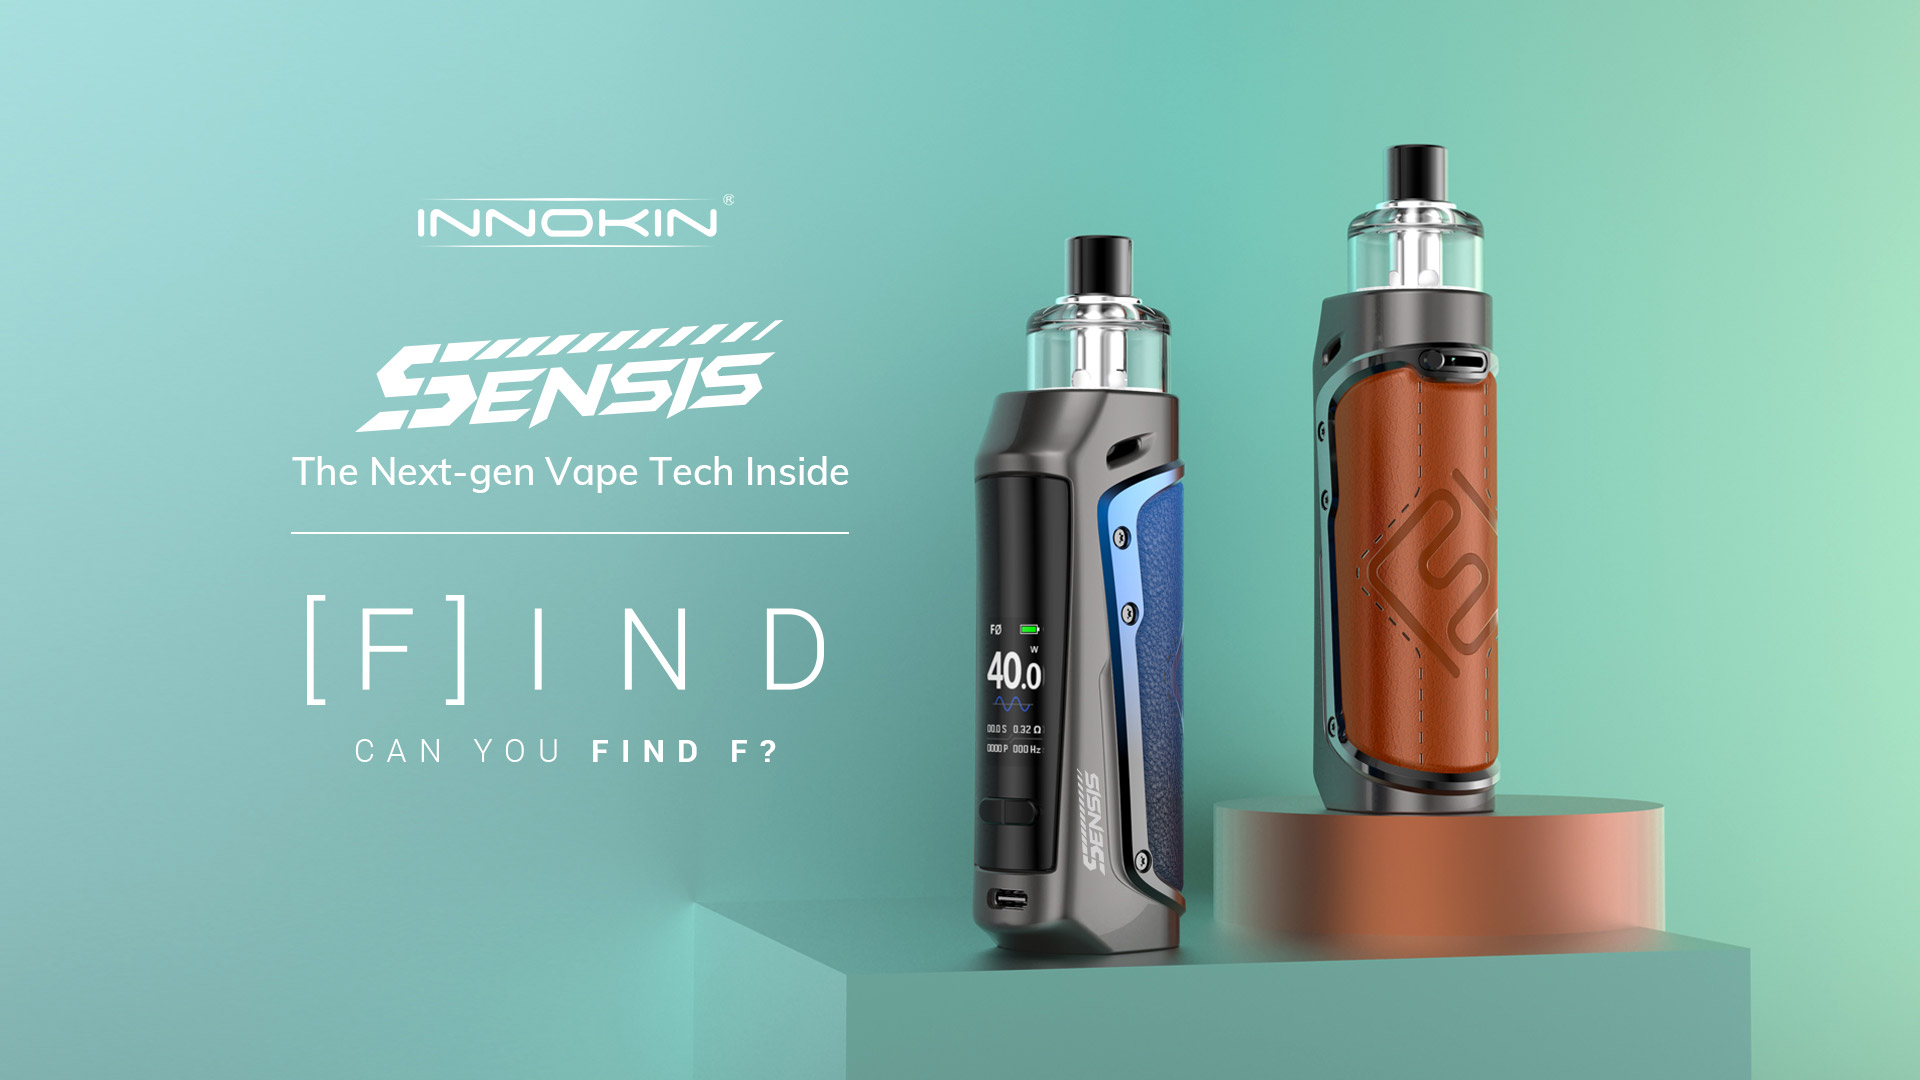 innokin-launches-sensis-pod-mod-with-the-next-gen-vape-tech-inside